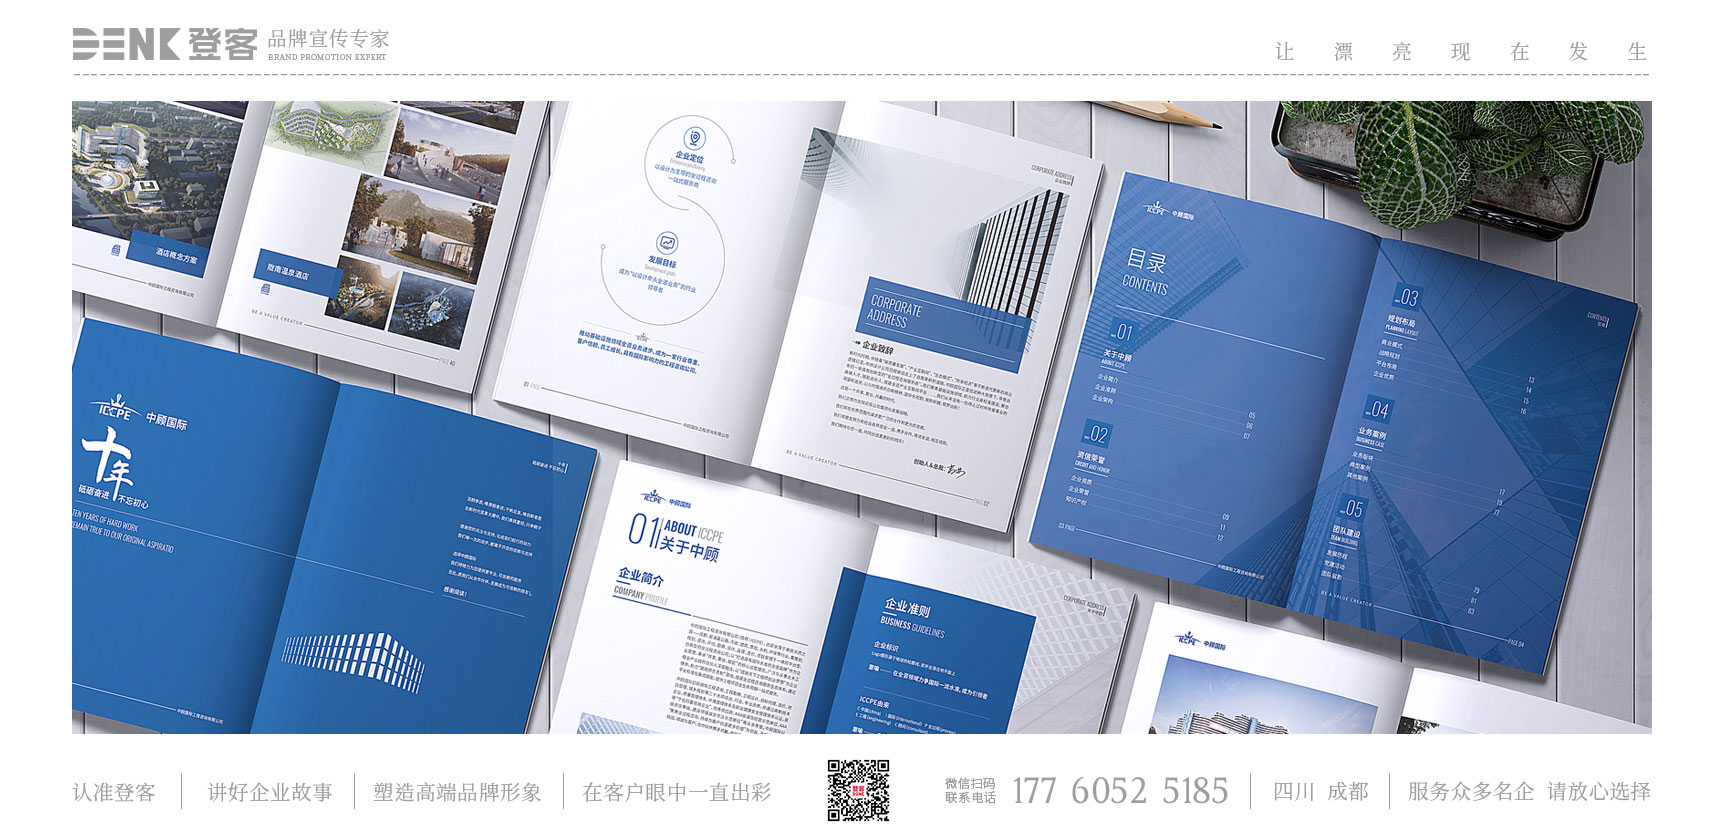 建筑画册设计，企业形象画册设计，水利宣传册设计，建筑图册设计，咨询手册设计，中国国际画册设计，景观画册设计，